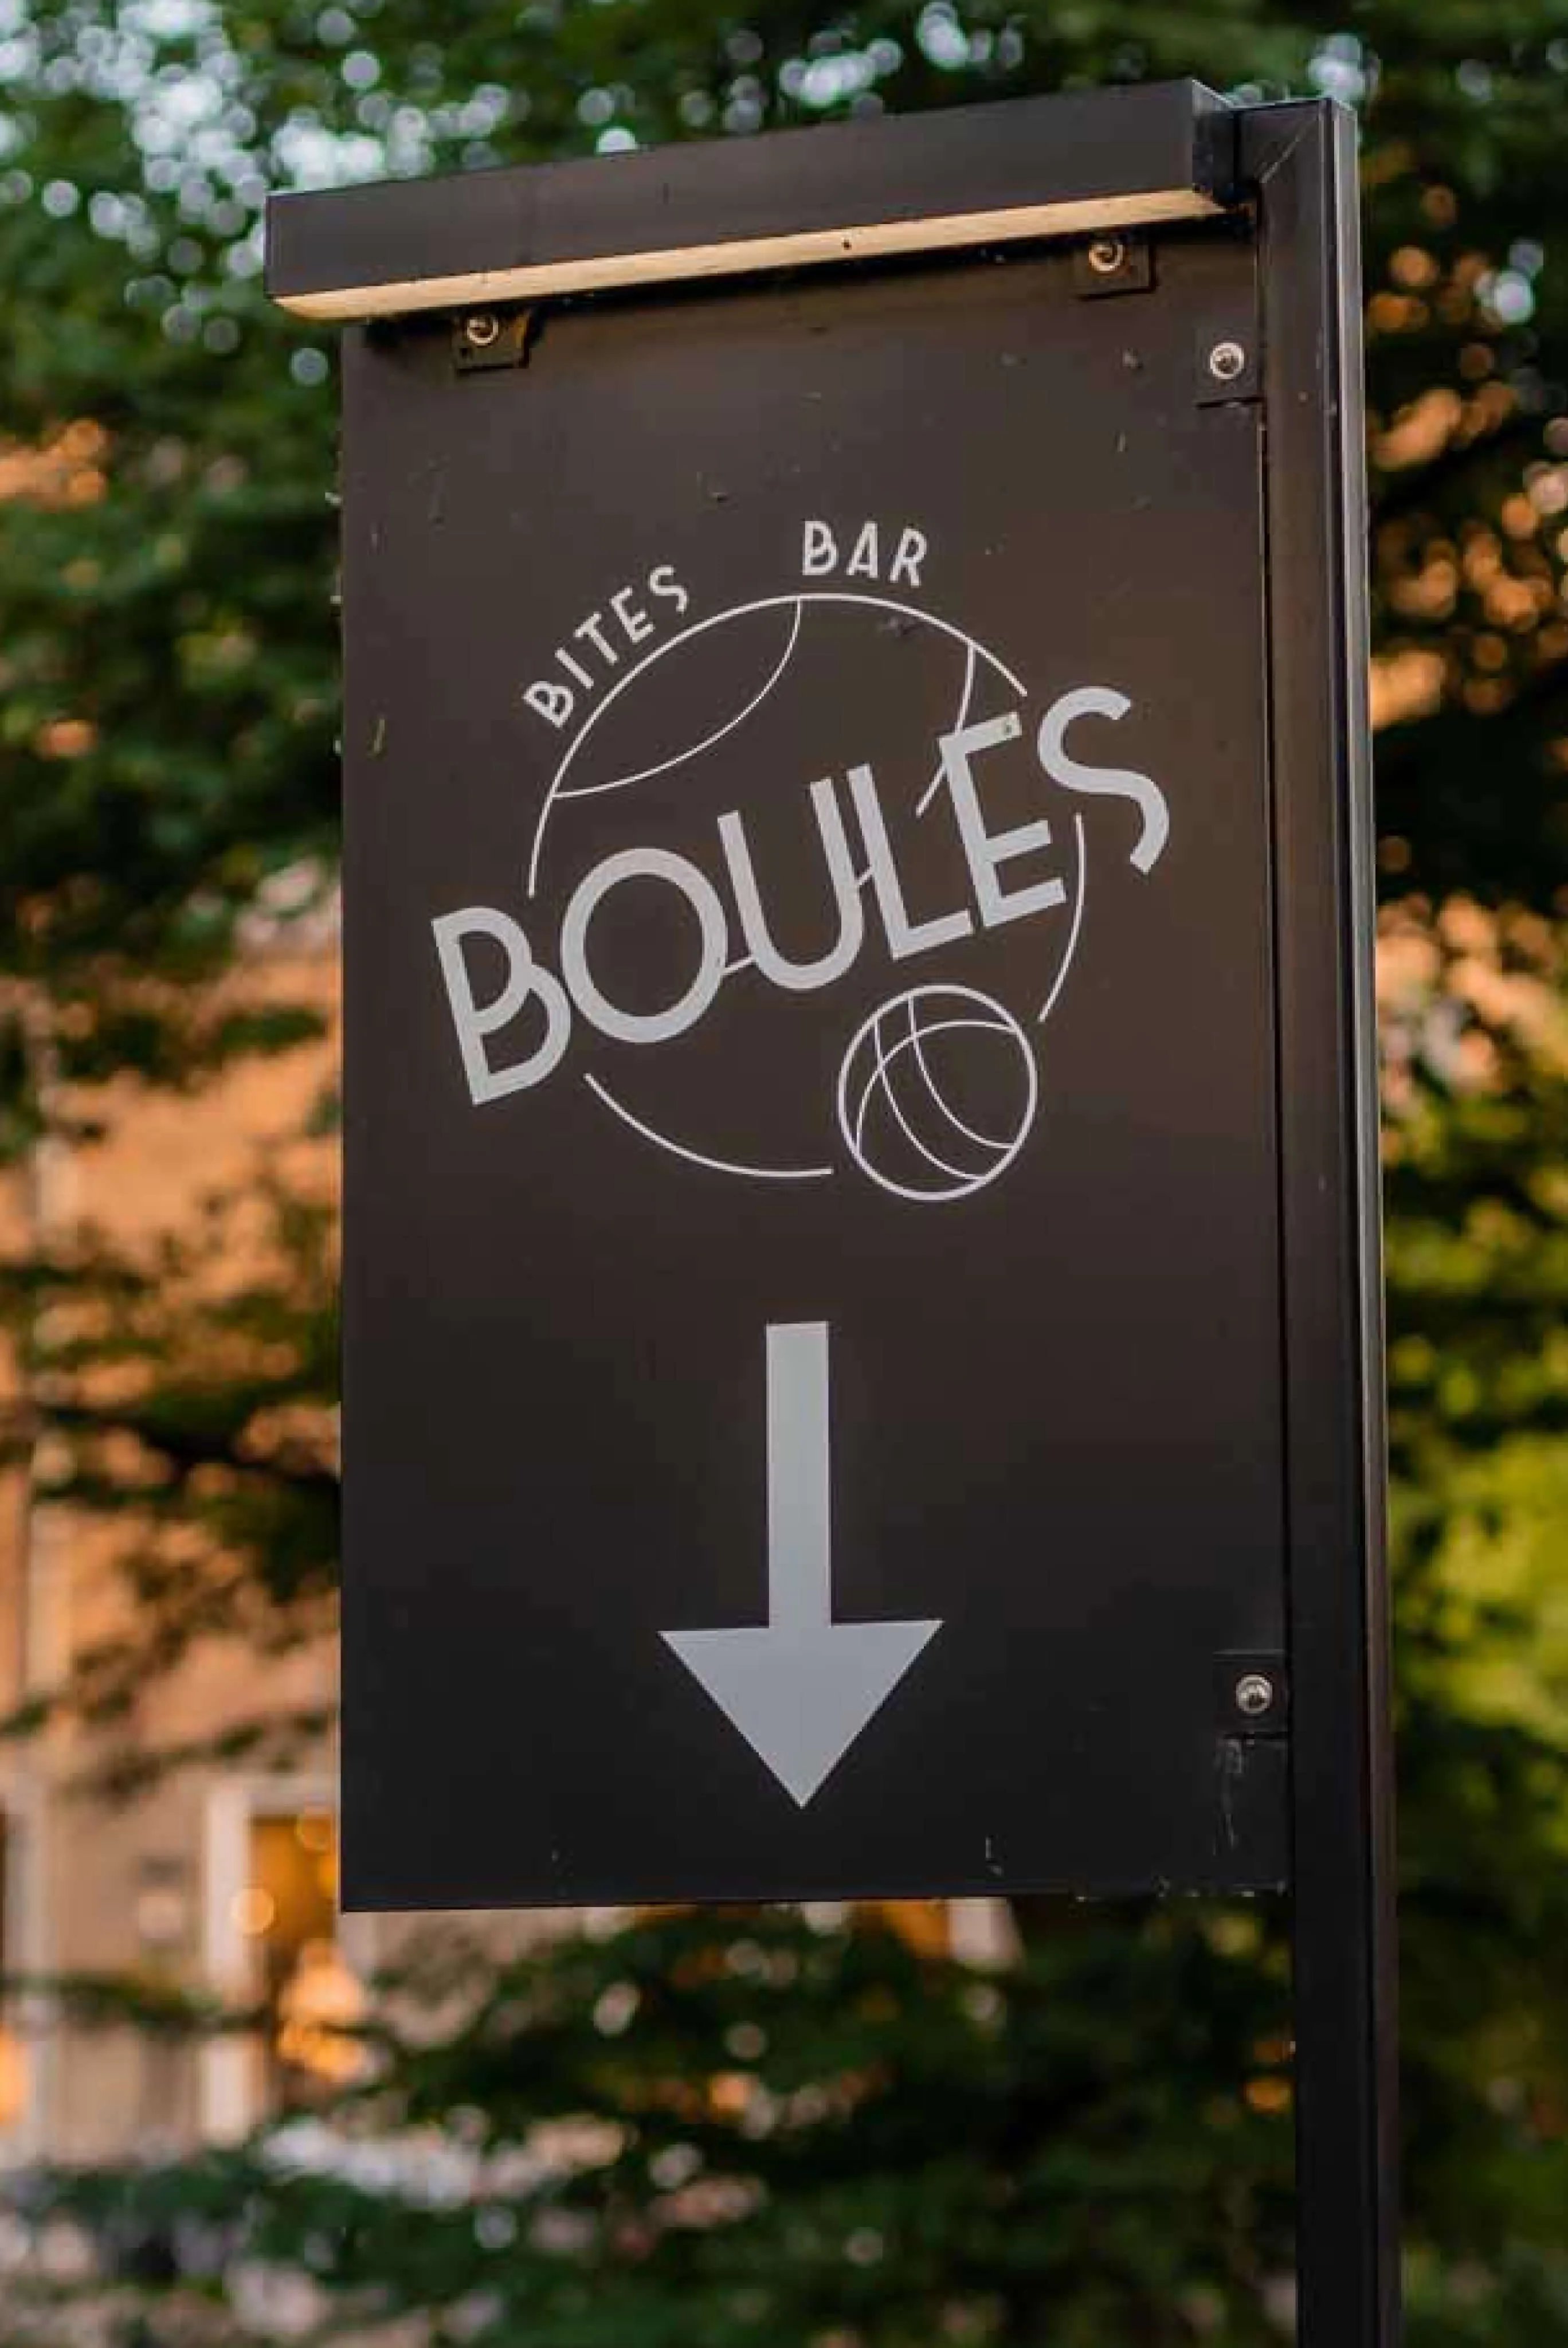 bbb boules2